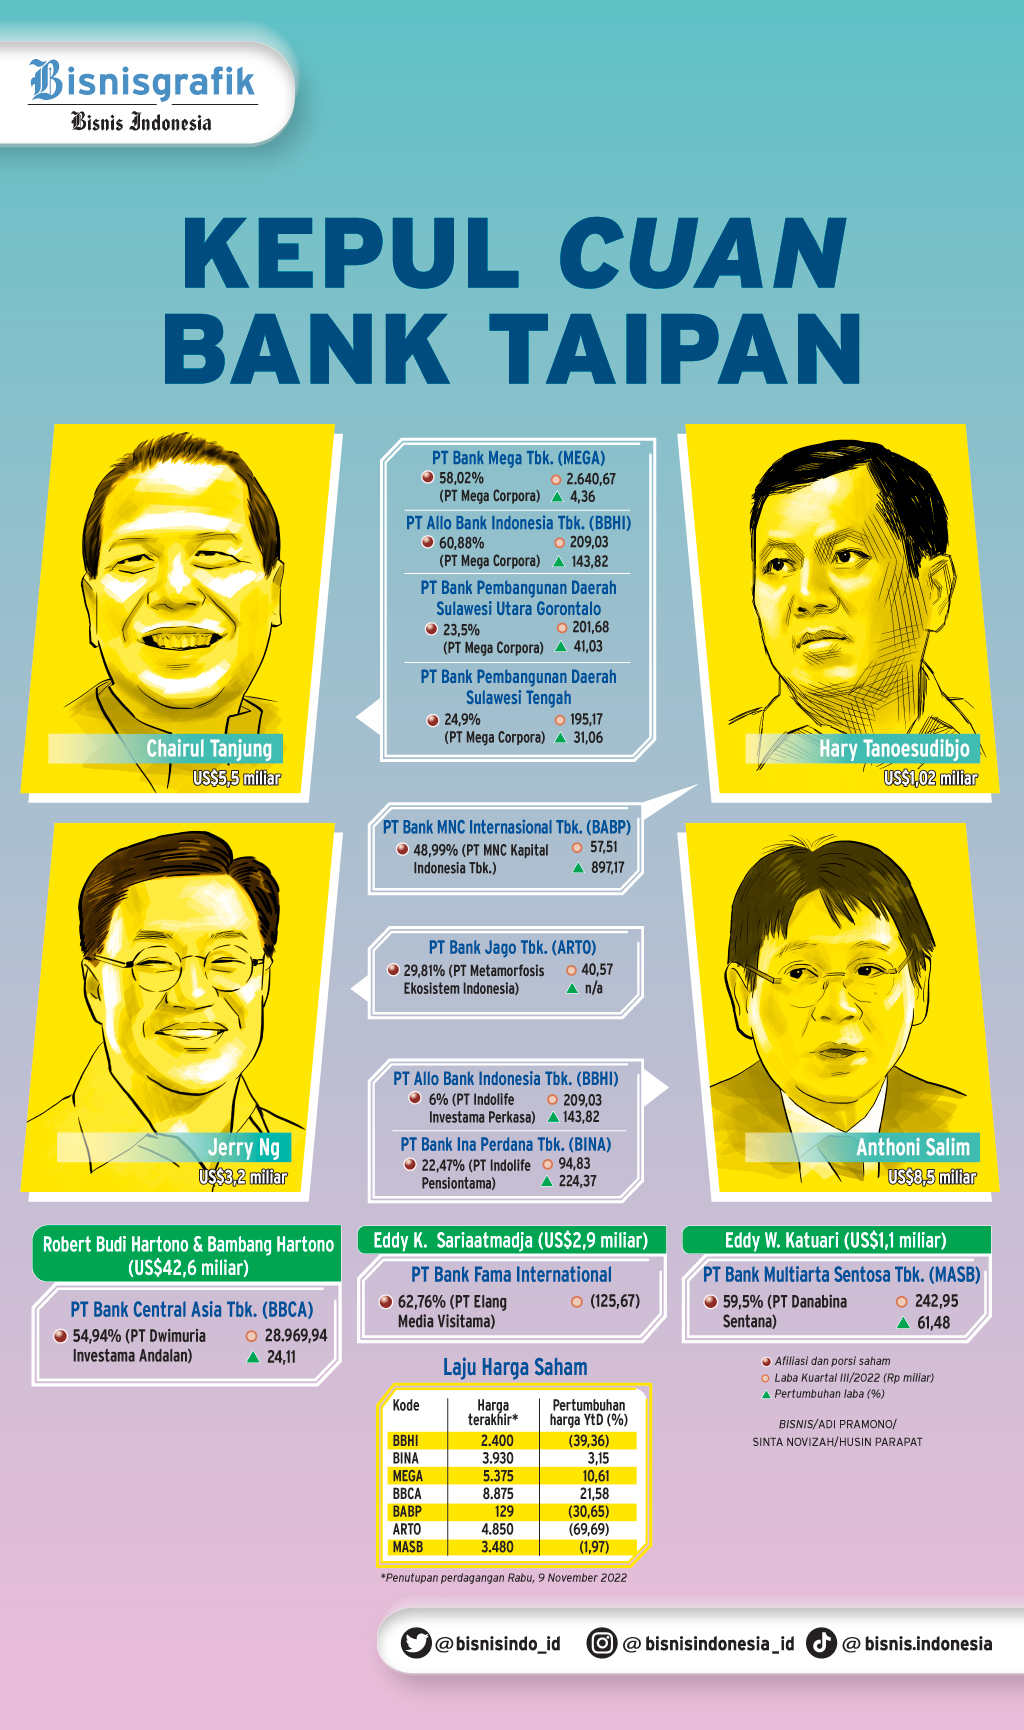 BENTUK EKOSISTEM BISNIS : Kepul Cuan Bank Taipan